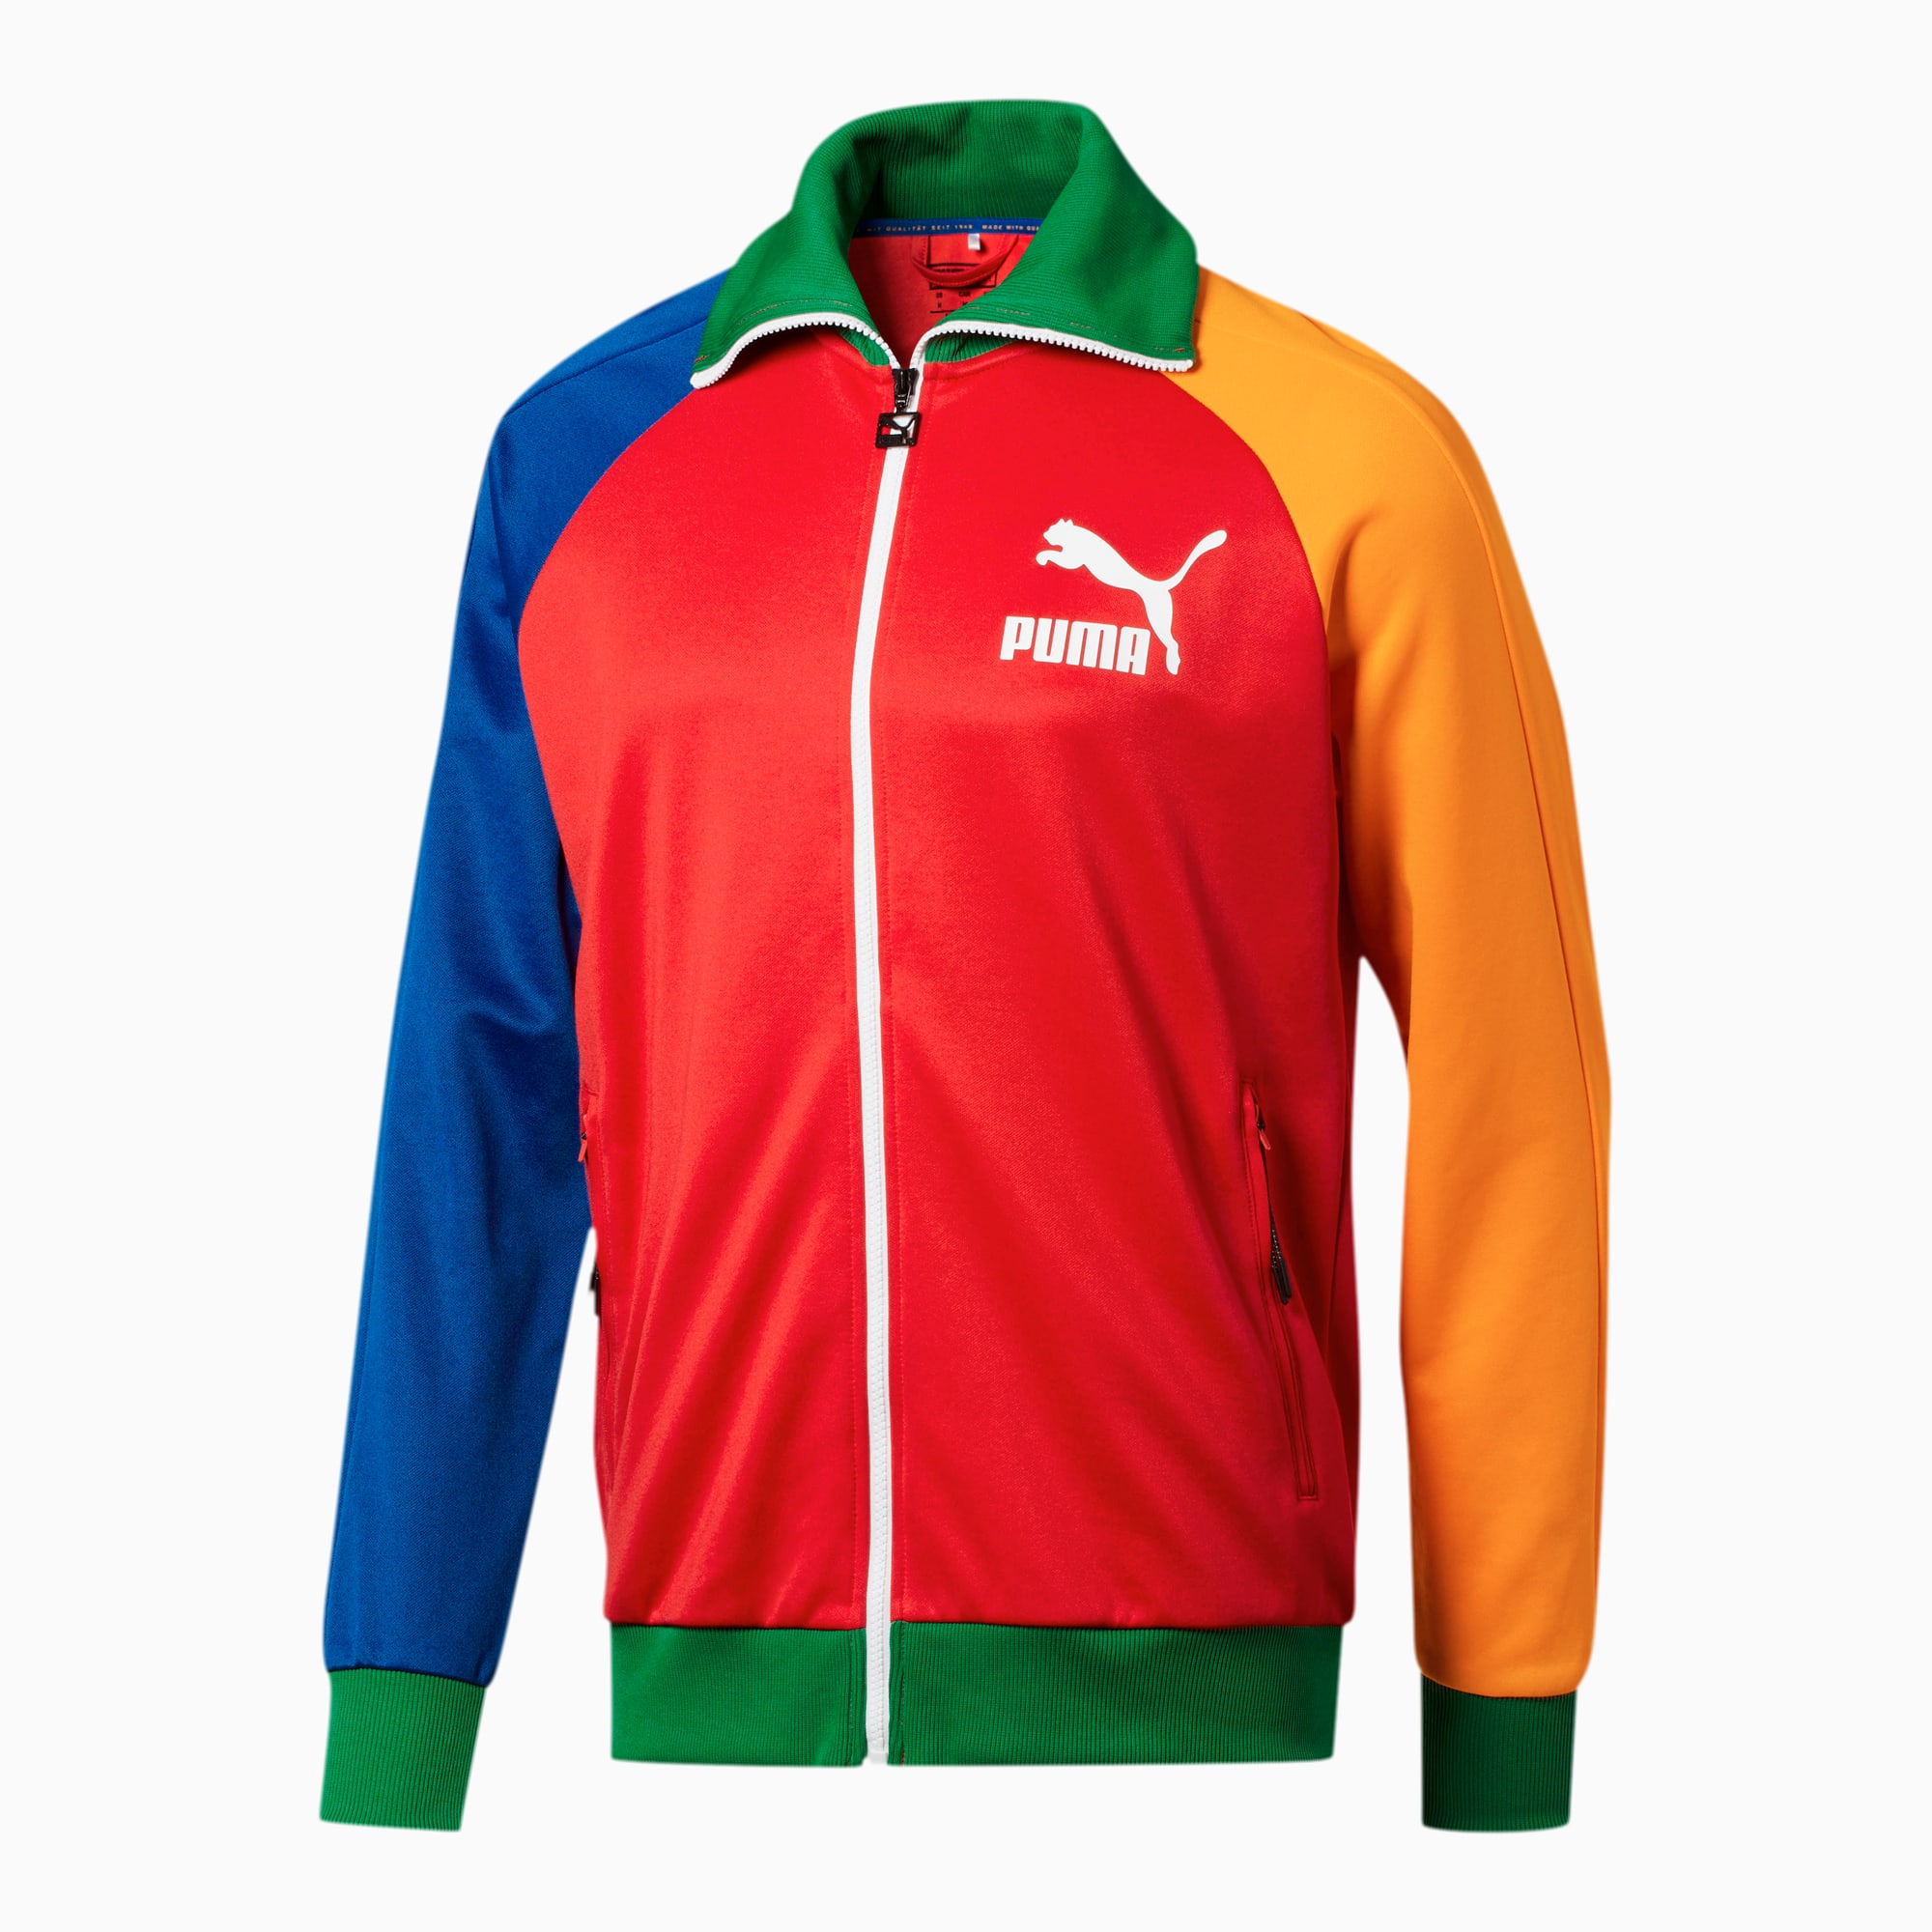 SPARKY on Behance  Puma jacket, Athletic jacket, Adidas jacket